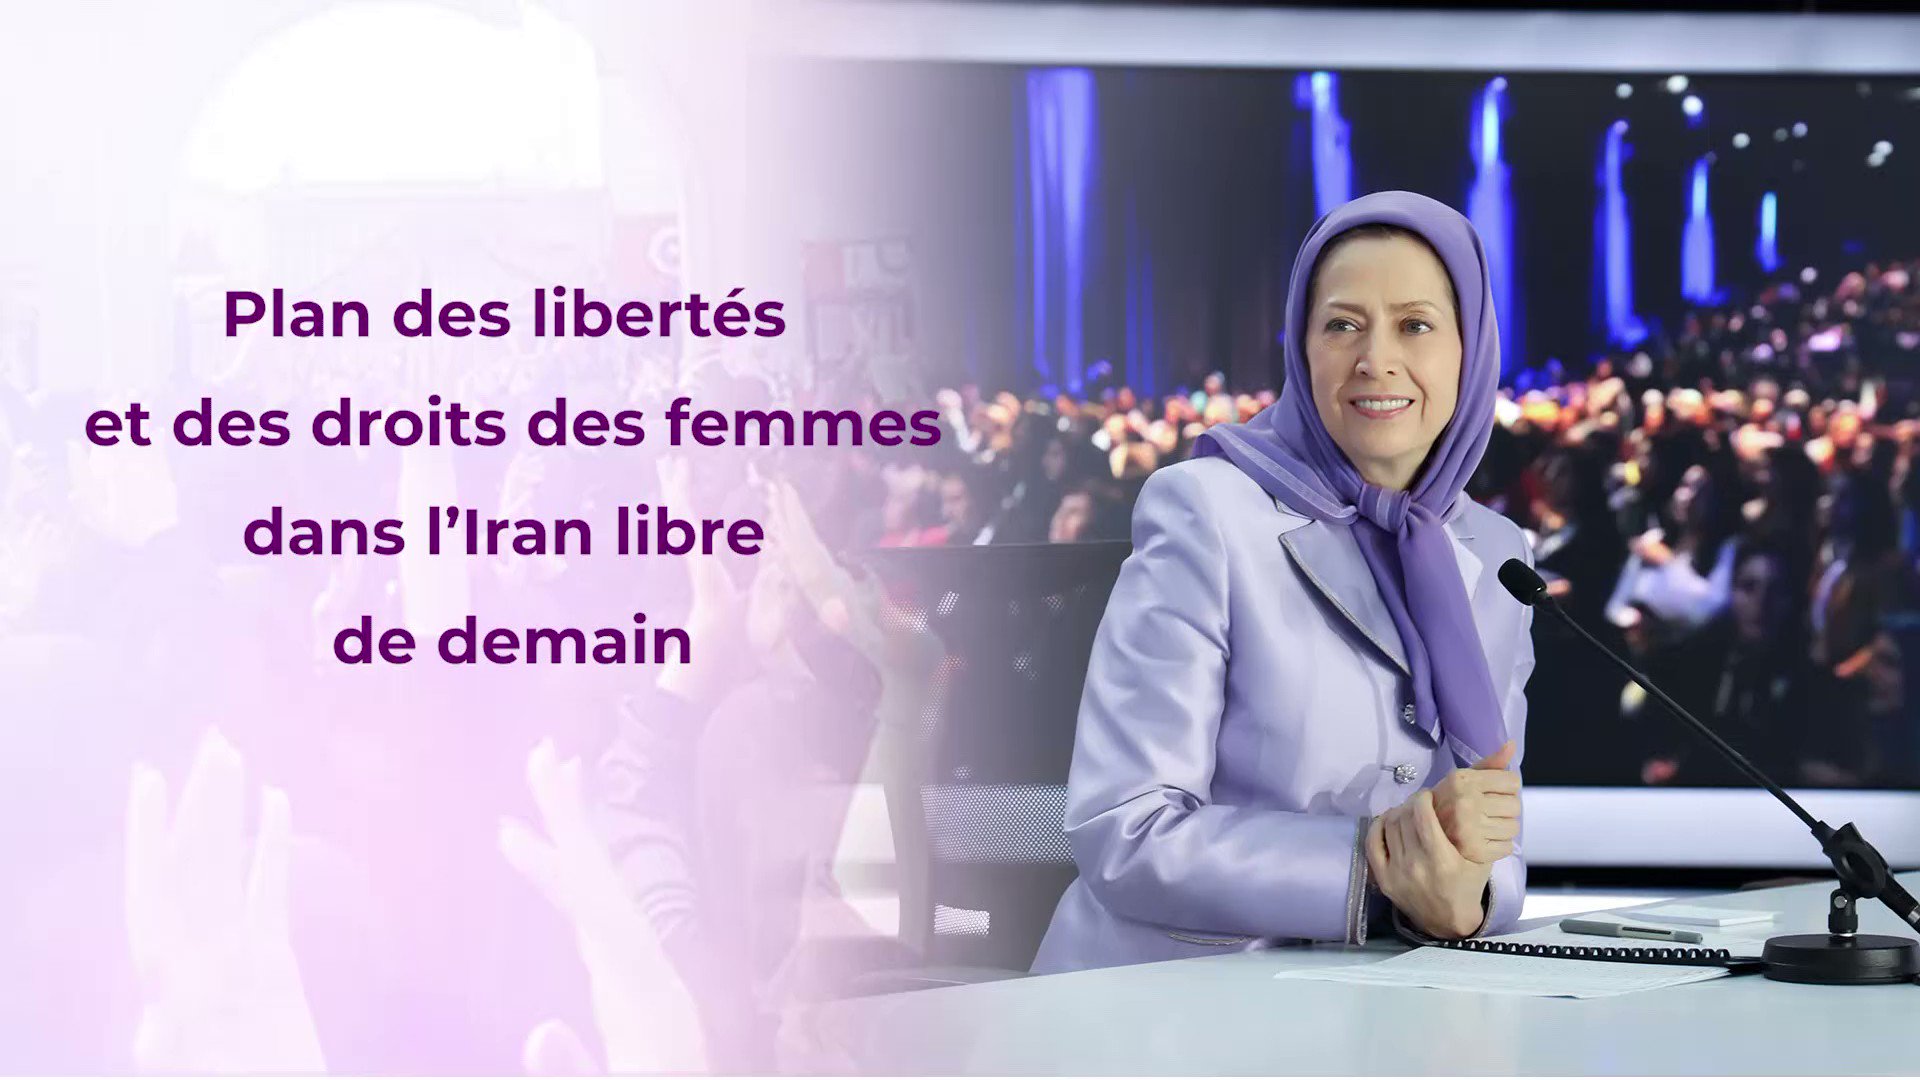 Maryam Radjavi on Twitter: "Les articles les plus importants des droits et libertés des femmes dans l'#Iran libre de demain ne concernent pas seulement la libération des femmes mais aussi la libération